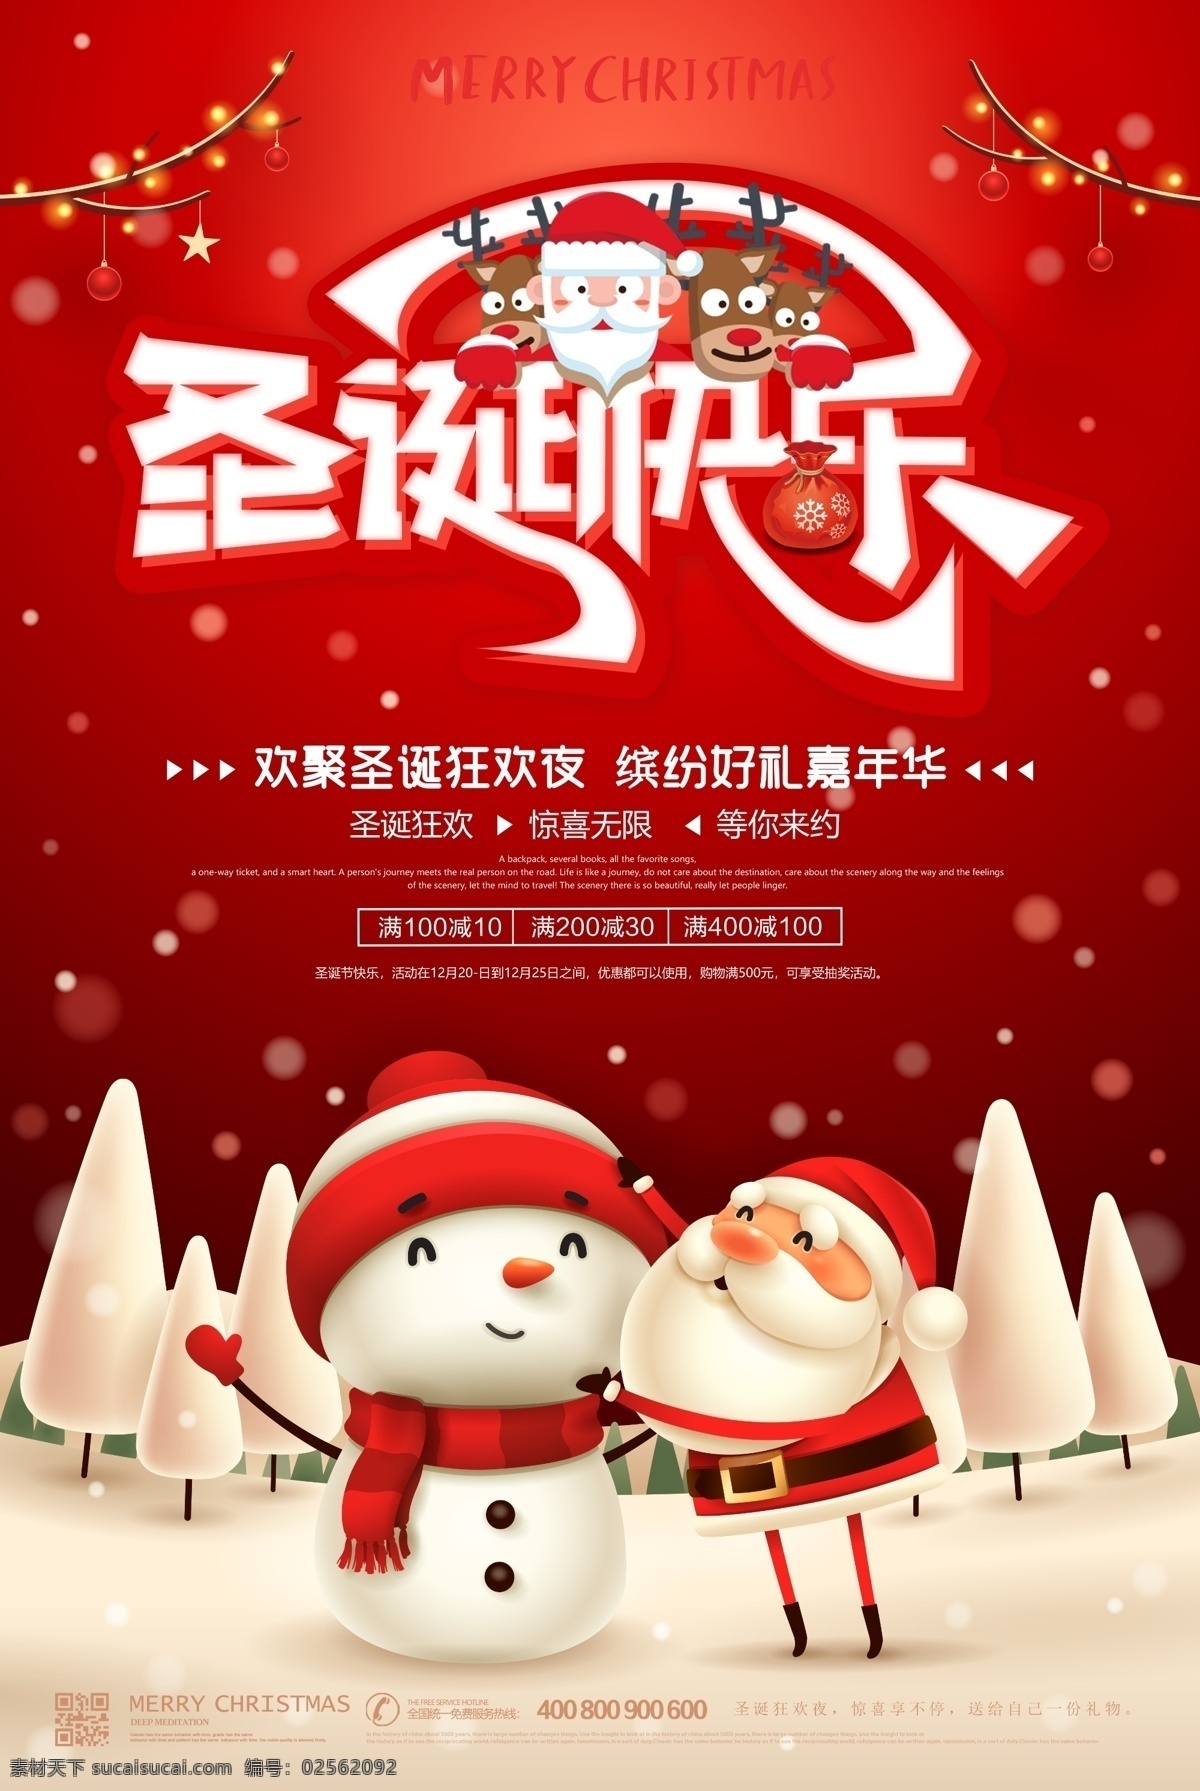 c4d 中国 红 圣诞 平安夜 海报 中国红 营销推广 平安夜圣诞节